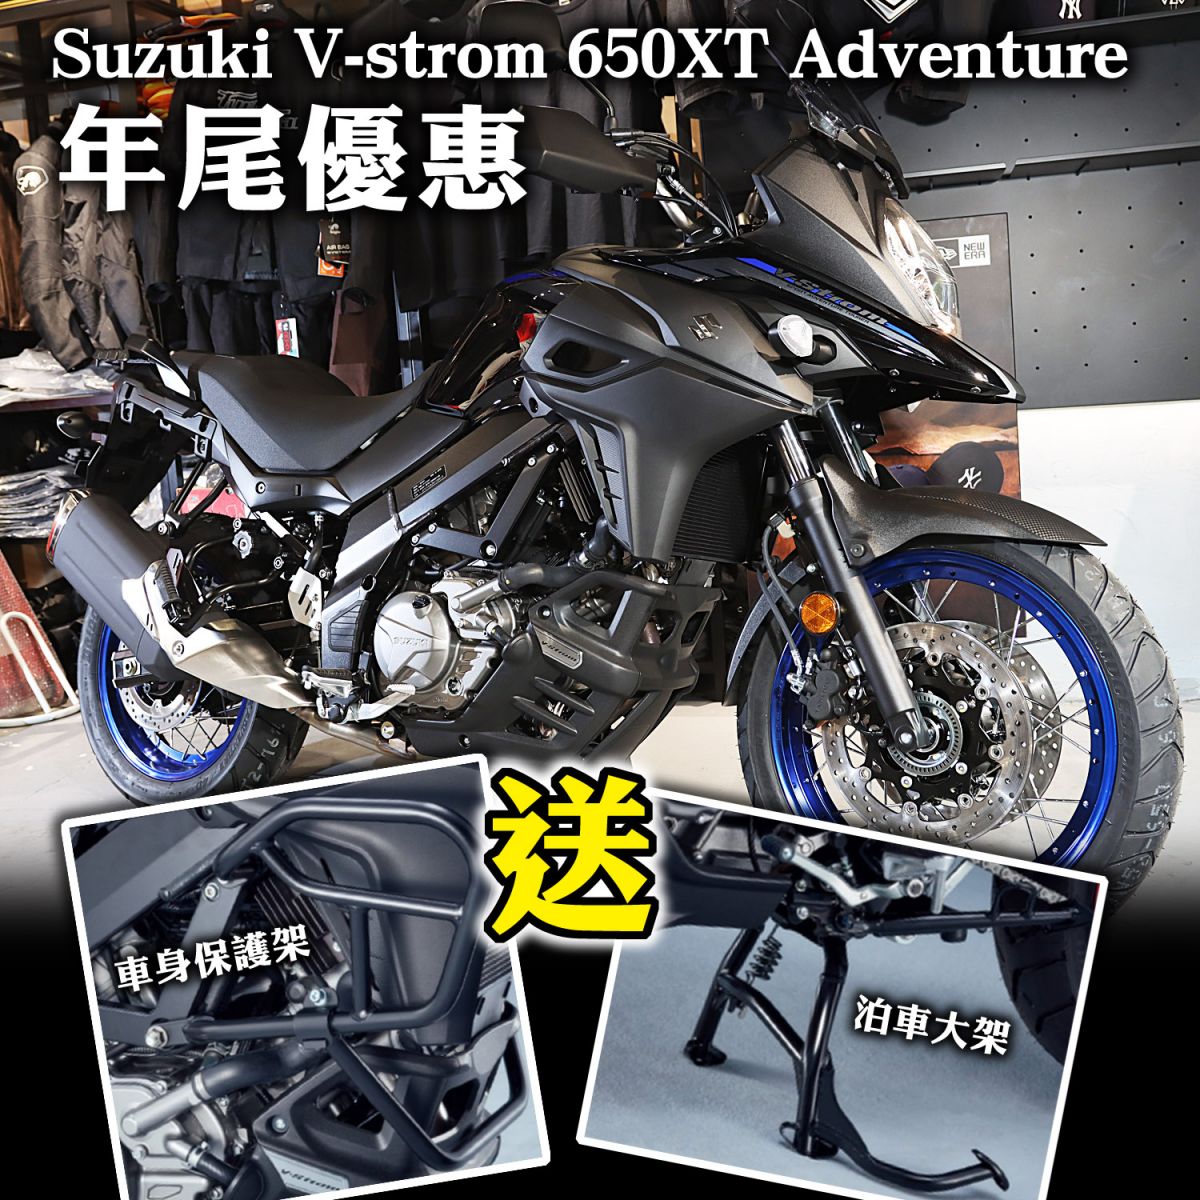 2021 Suzuki V-Strom 650XT Adventure